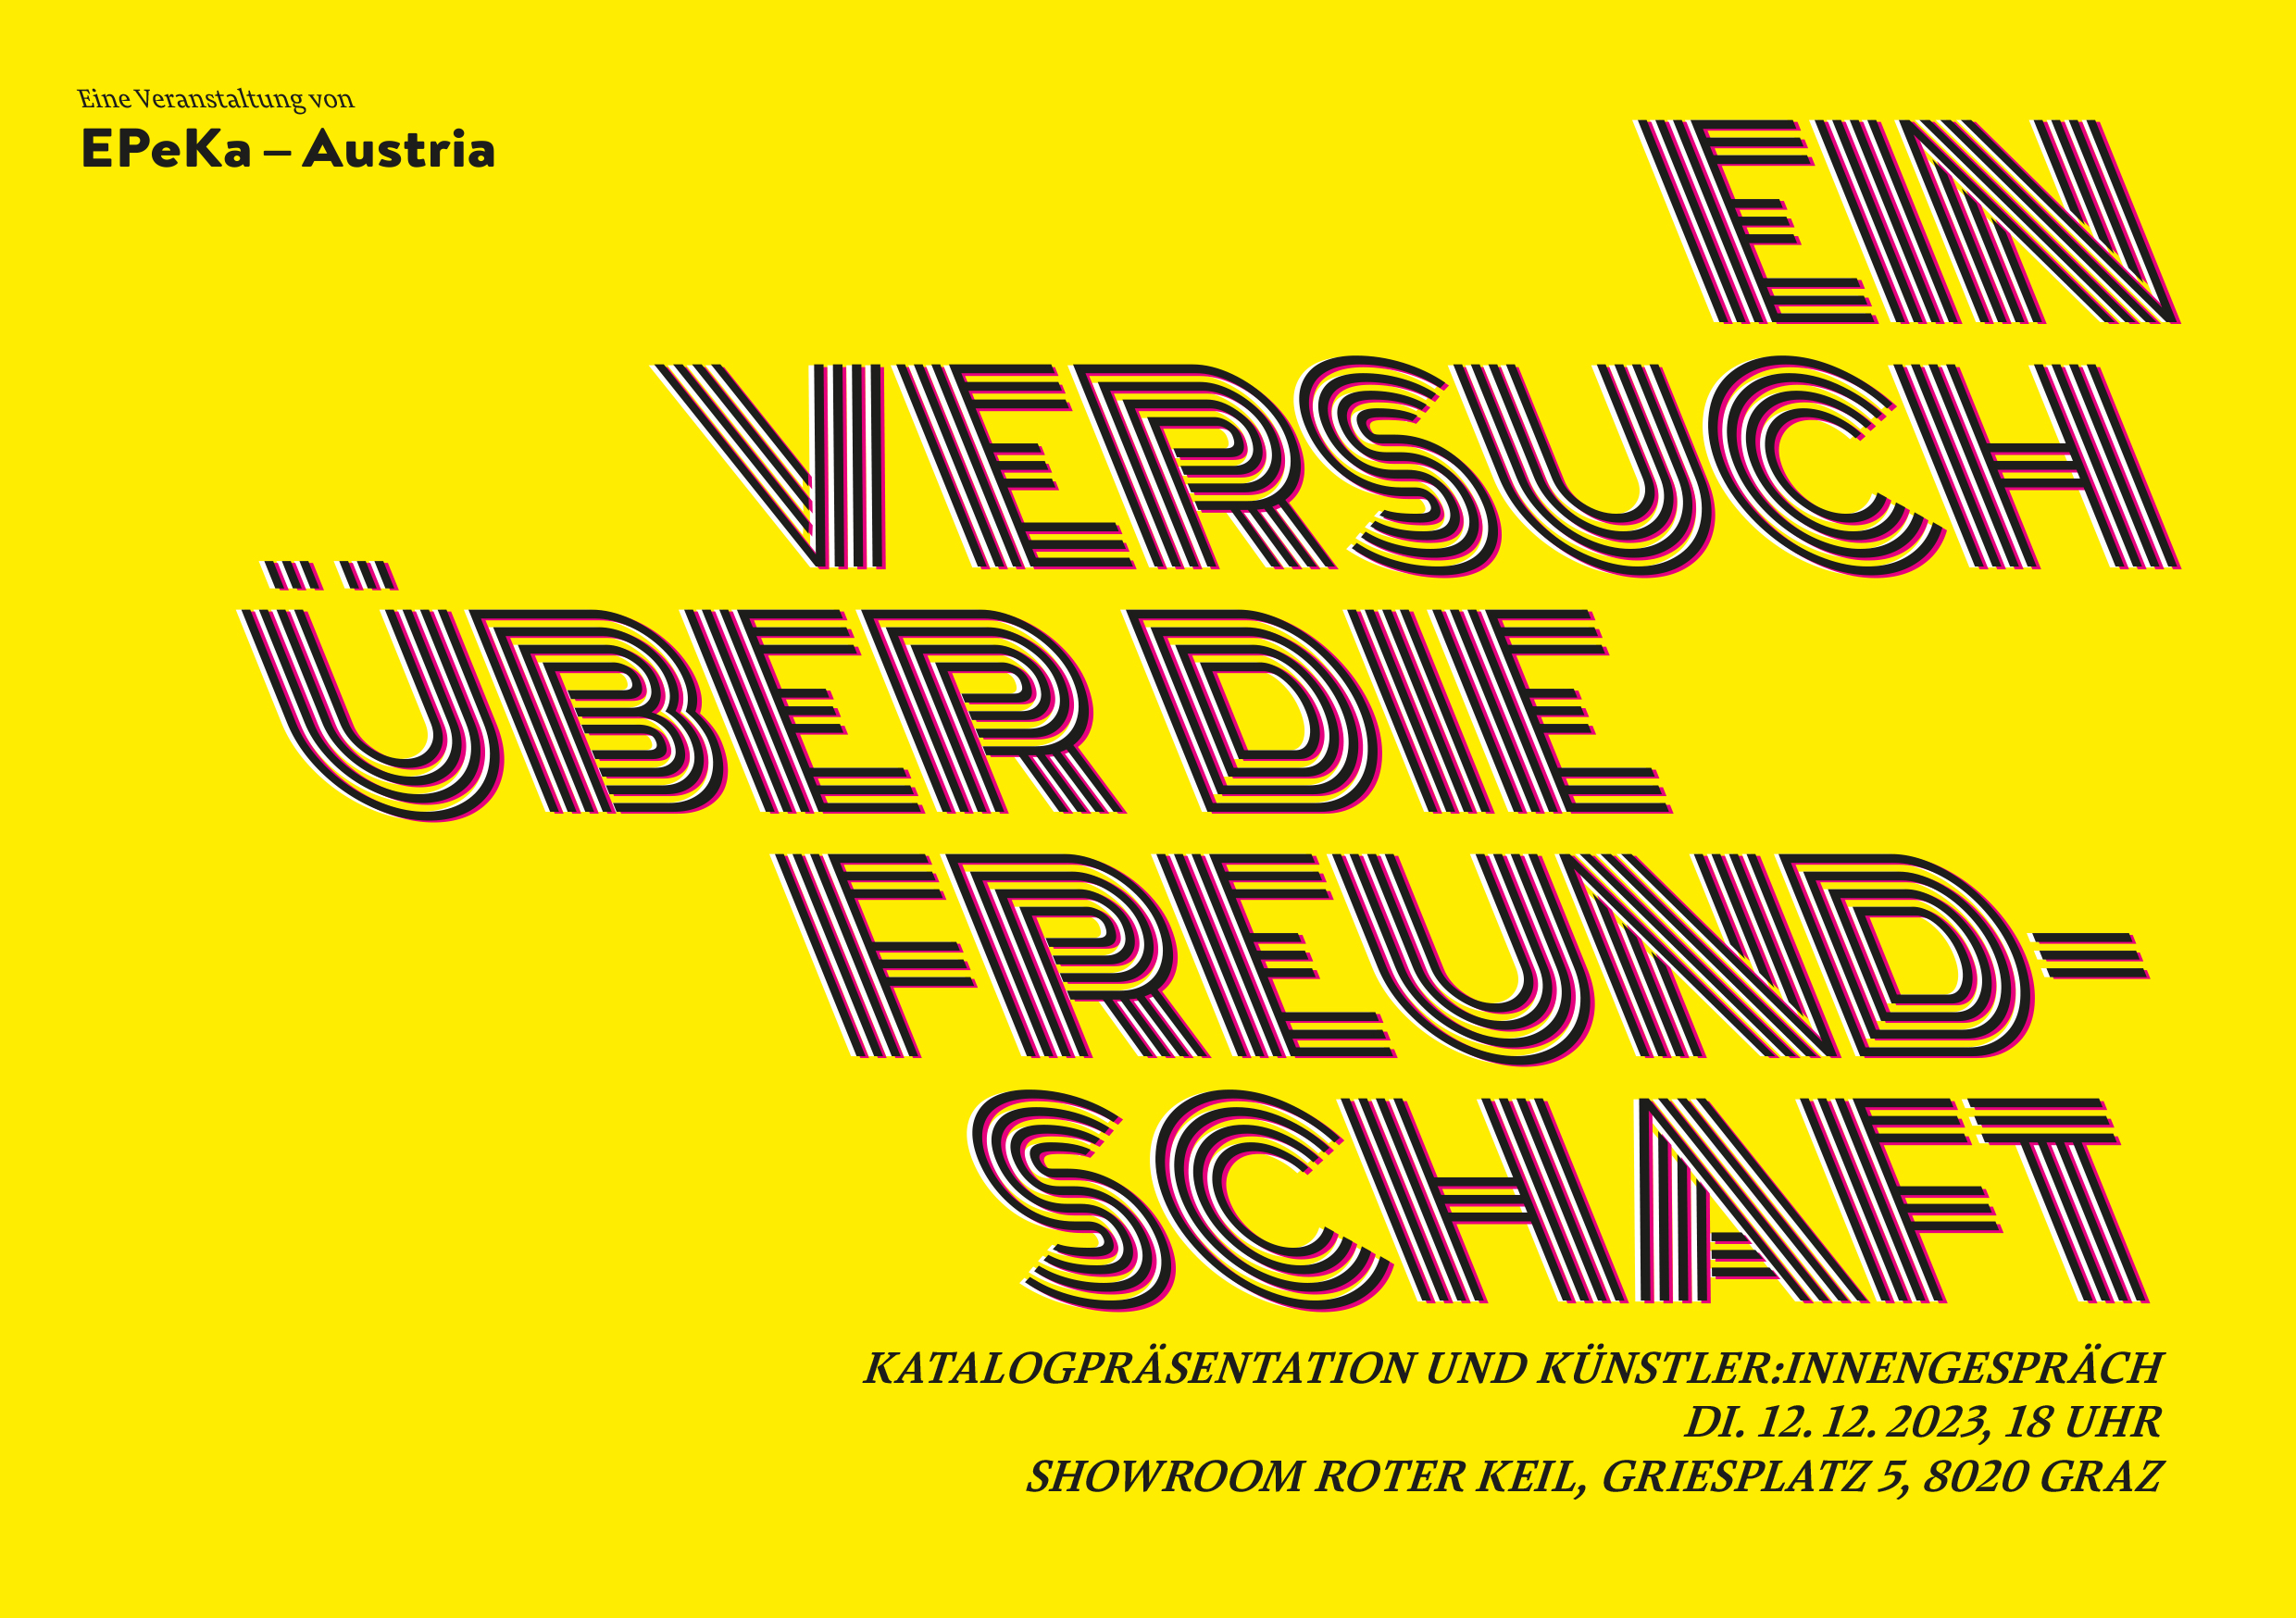 "Ein Versuch über die Freundschaft" - Katalogpräsentation, 12.12.23, 18:00, Graz